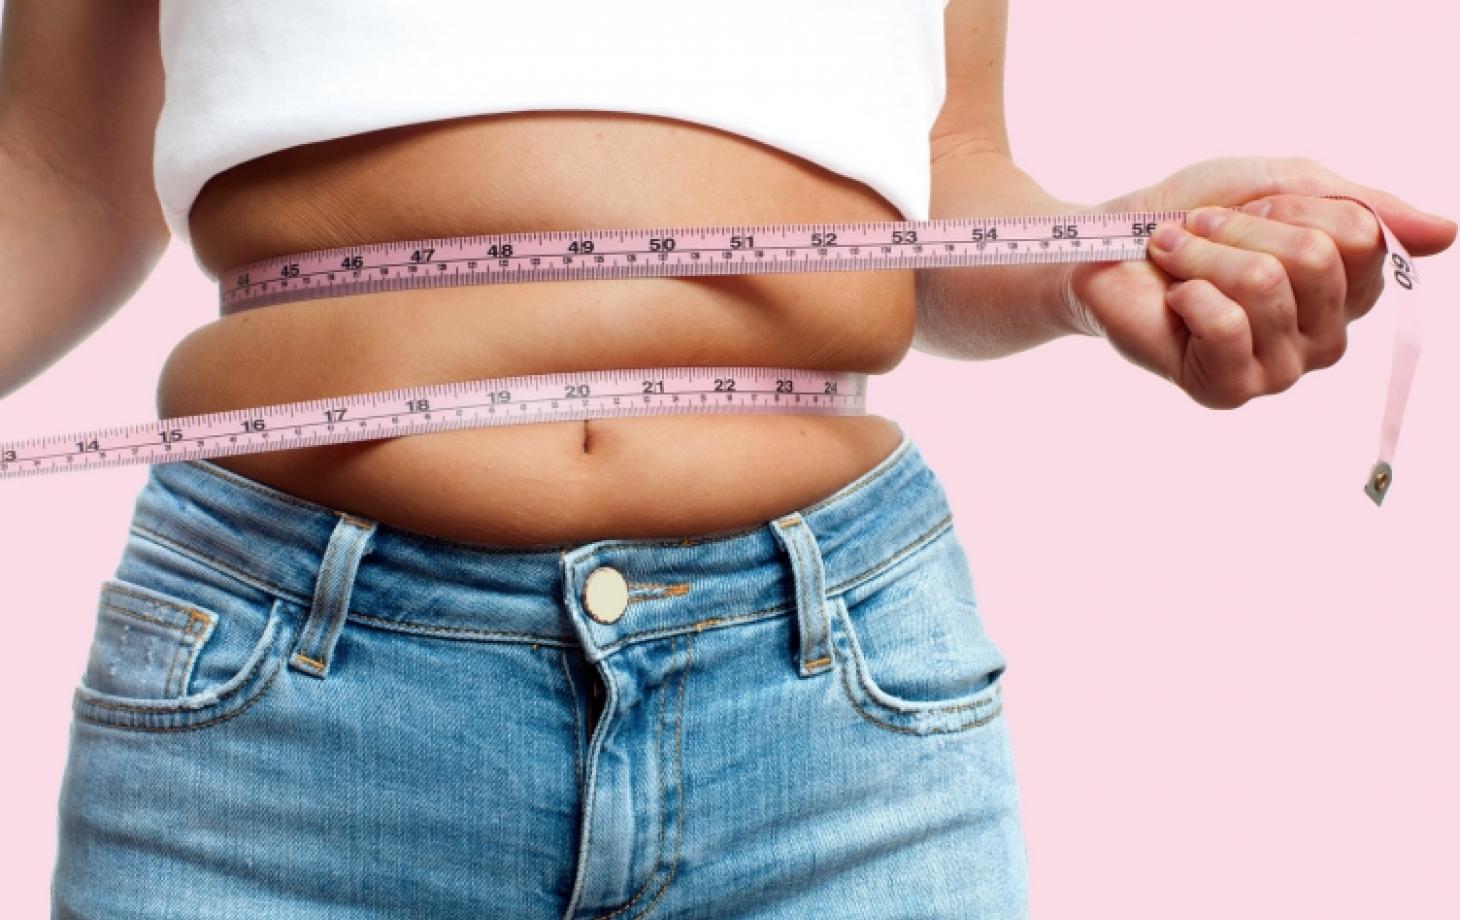 Похудеть после 40 лет: как избавиться от лишнего веса